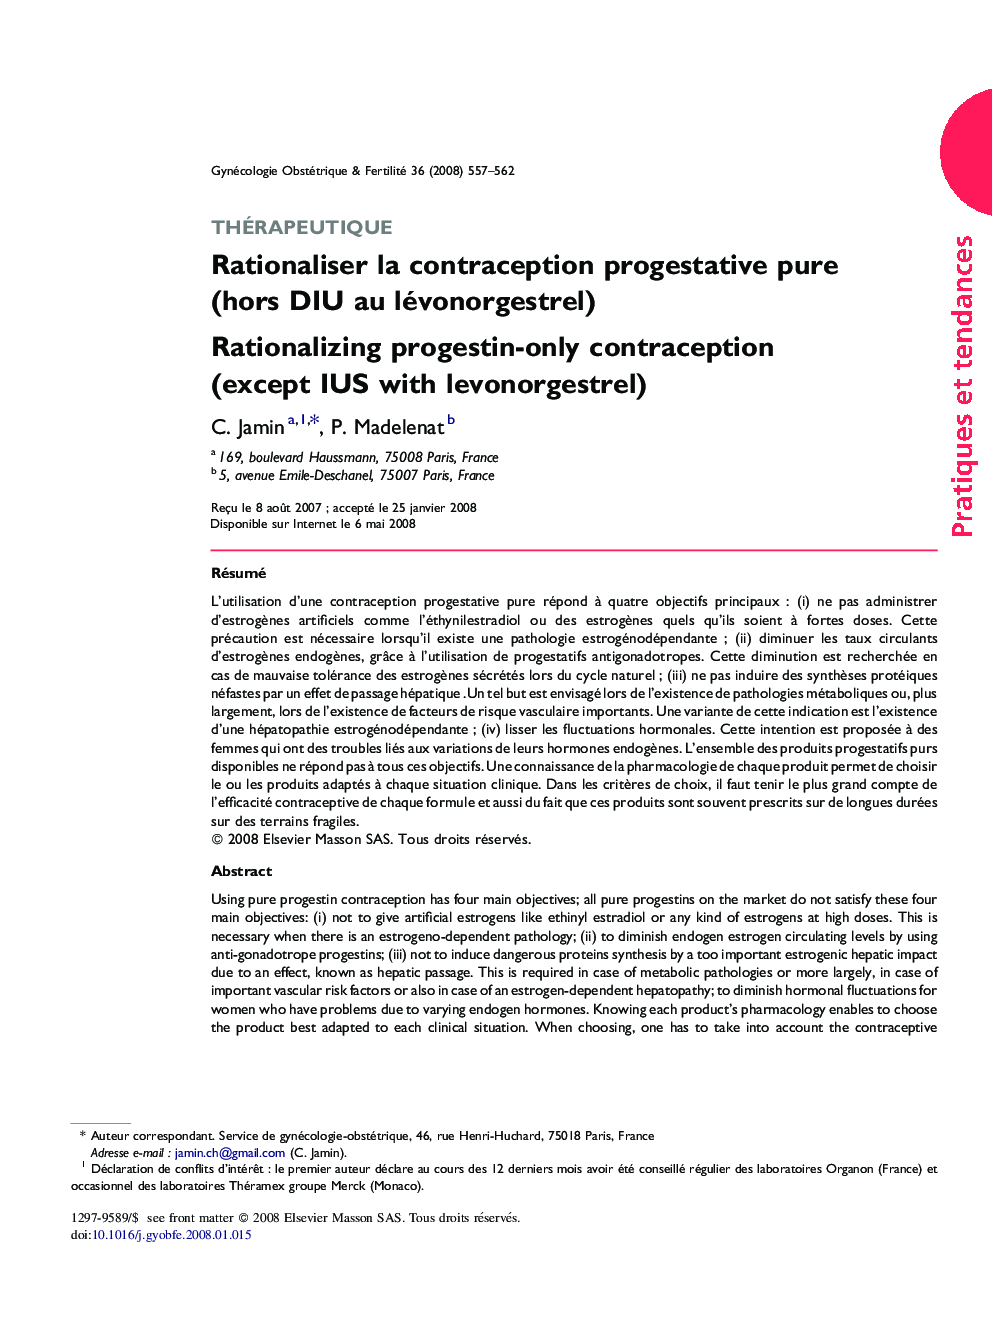 Rationaliser la contraception progestative pure (hors DIU au lévonorgestrel)